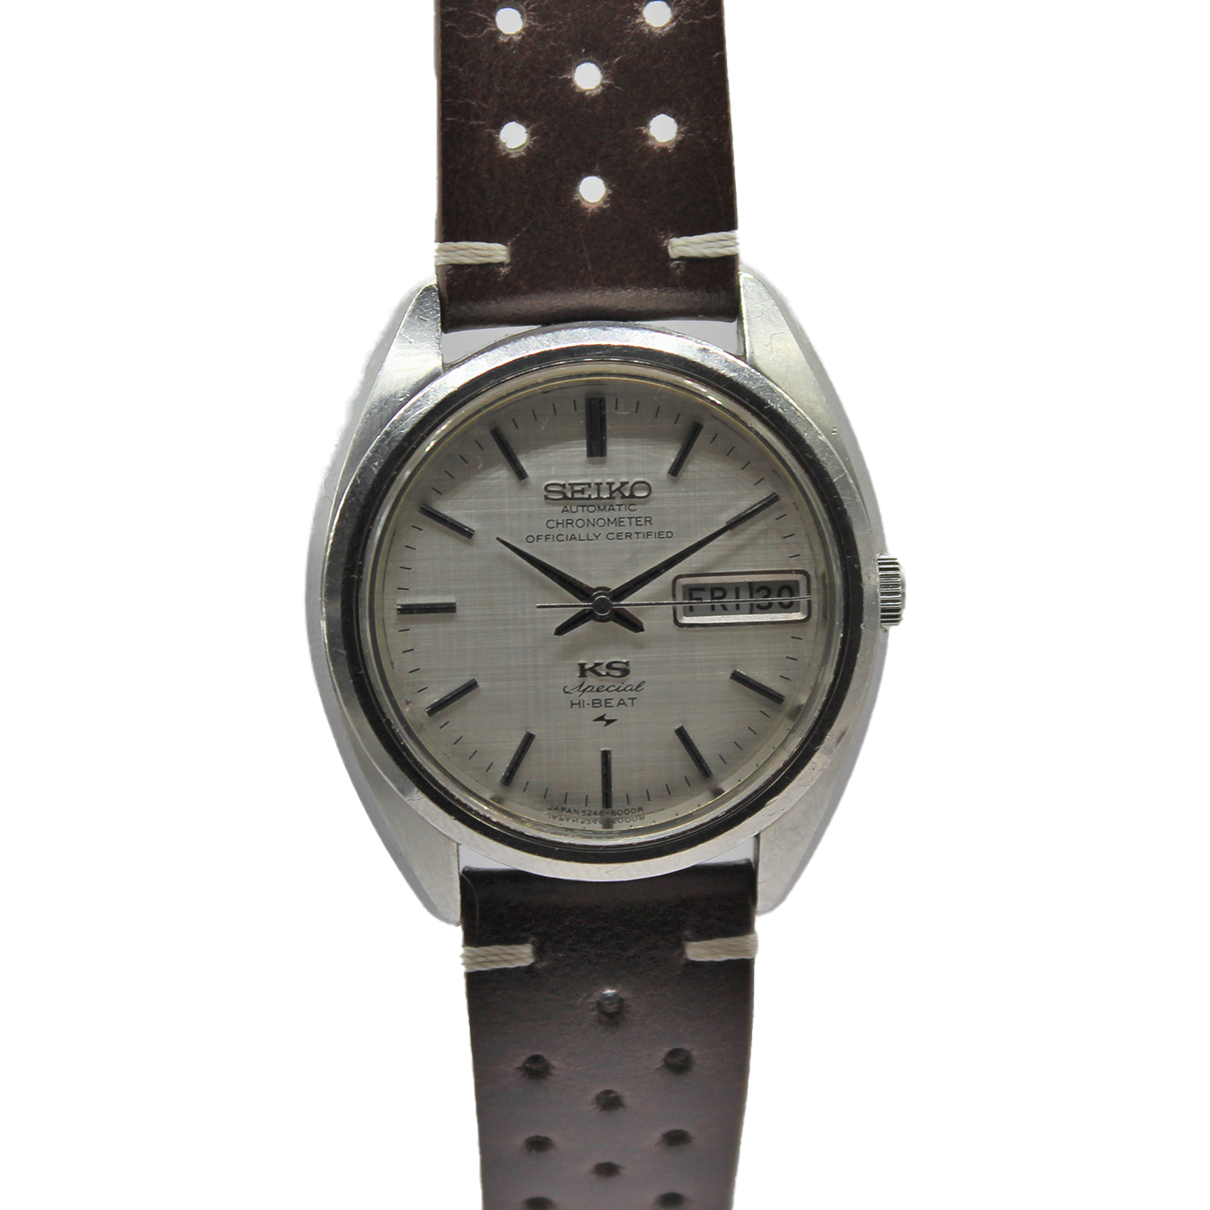 Vintage King Seiko Special Hi-Beat Chronometer 5246-6000 Serviced - Toronto  Vintage Watches - Vintage Seiko passion